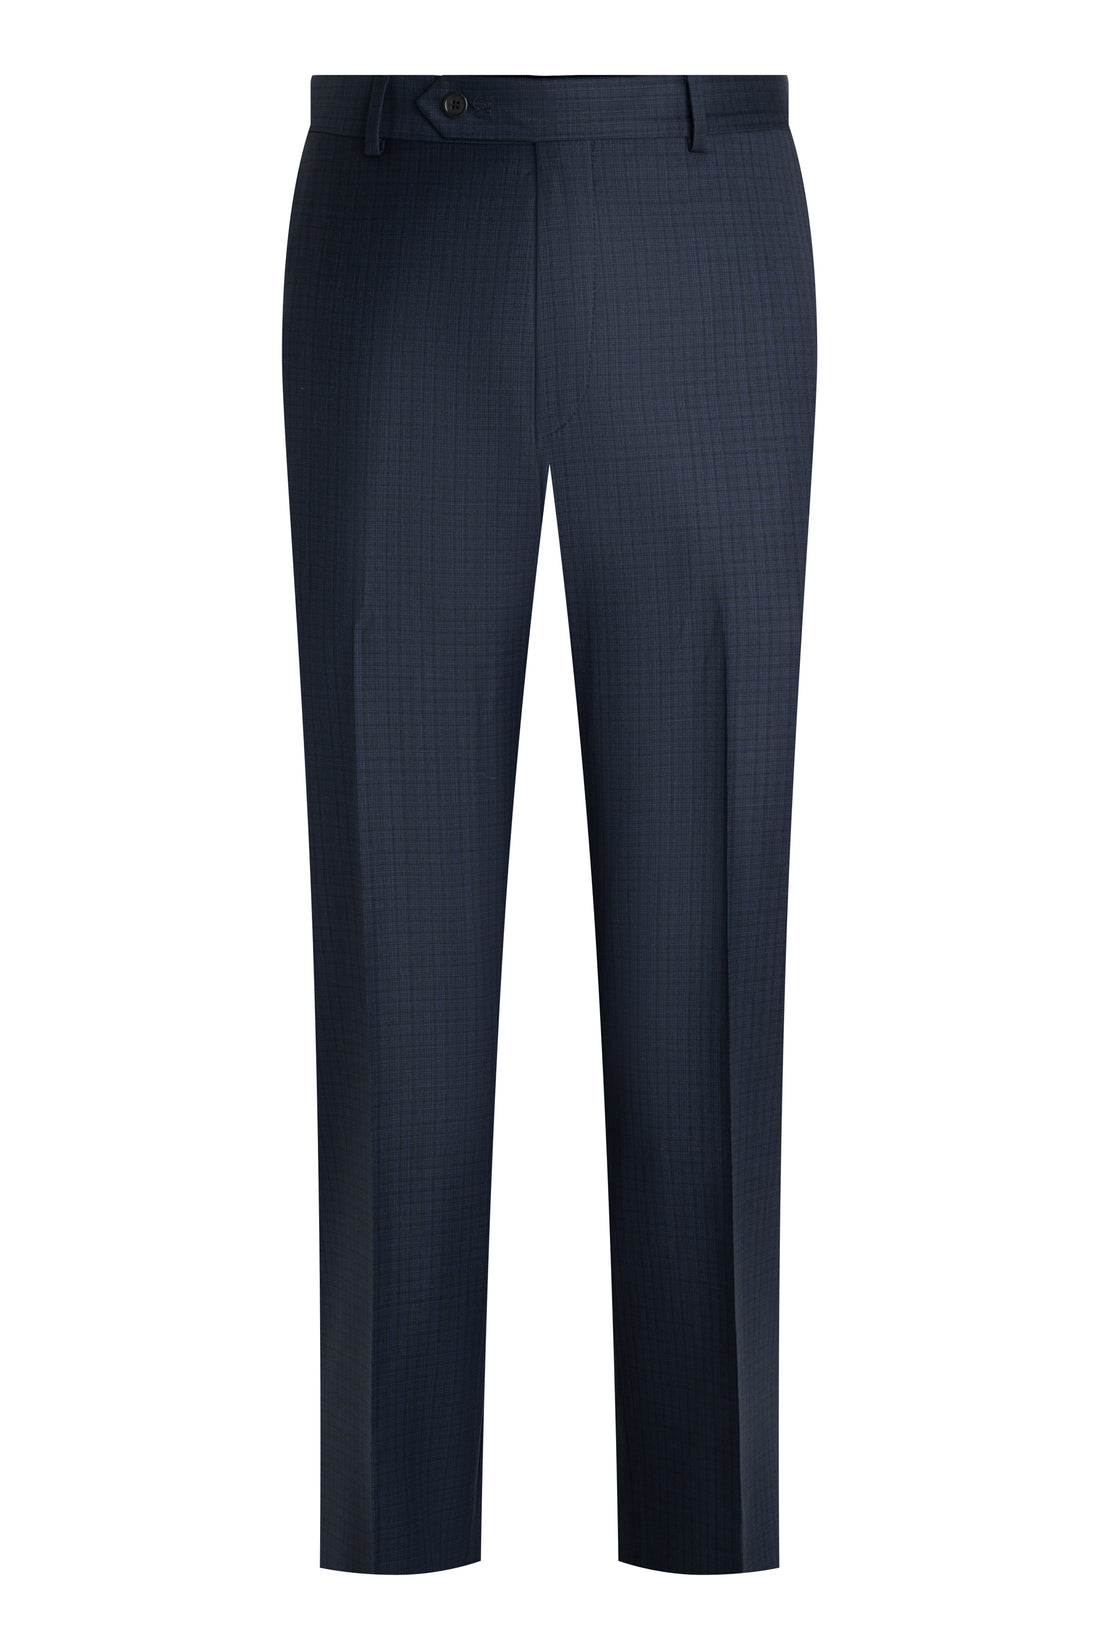 Dark Blue Check Double Twist Suit front pant